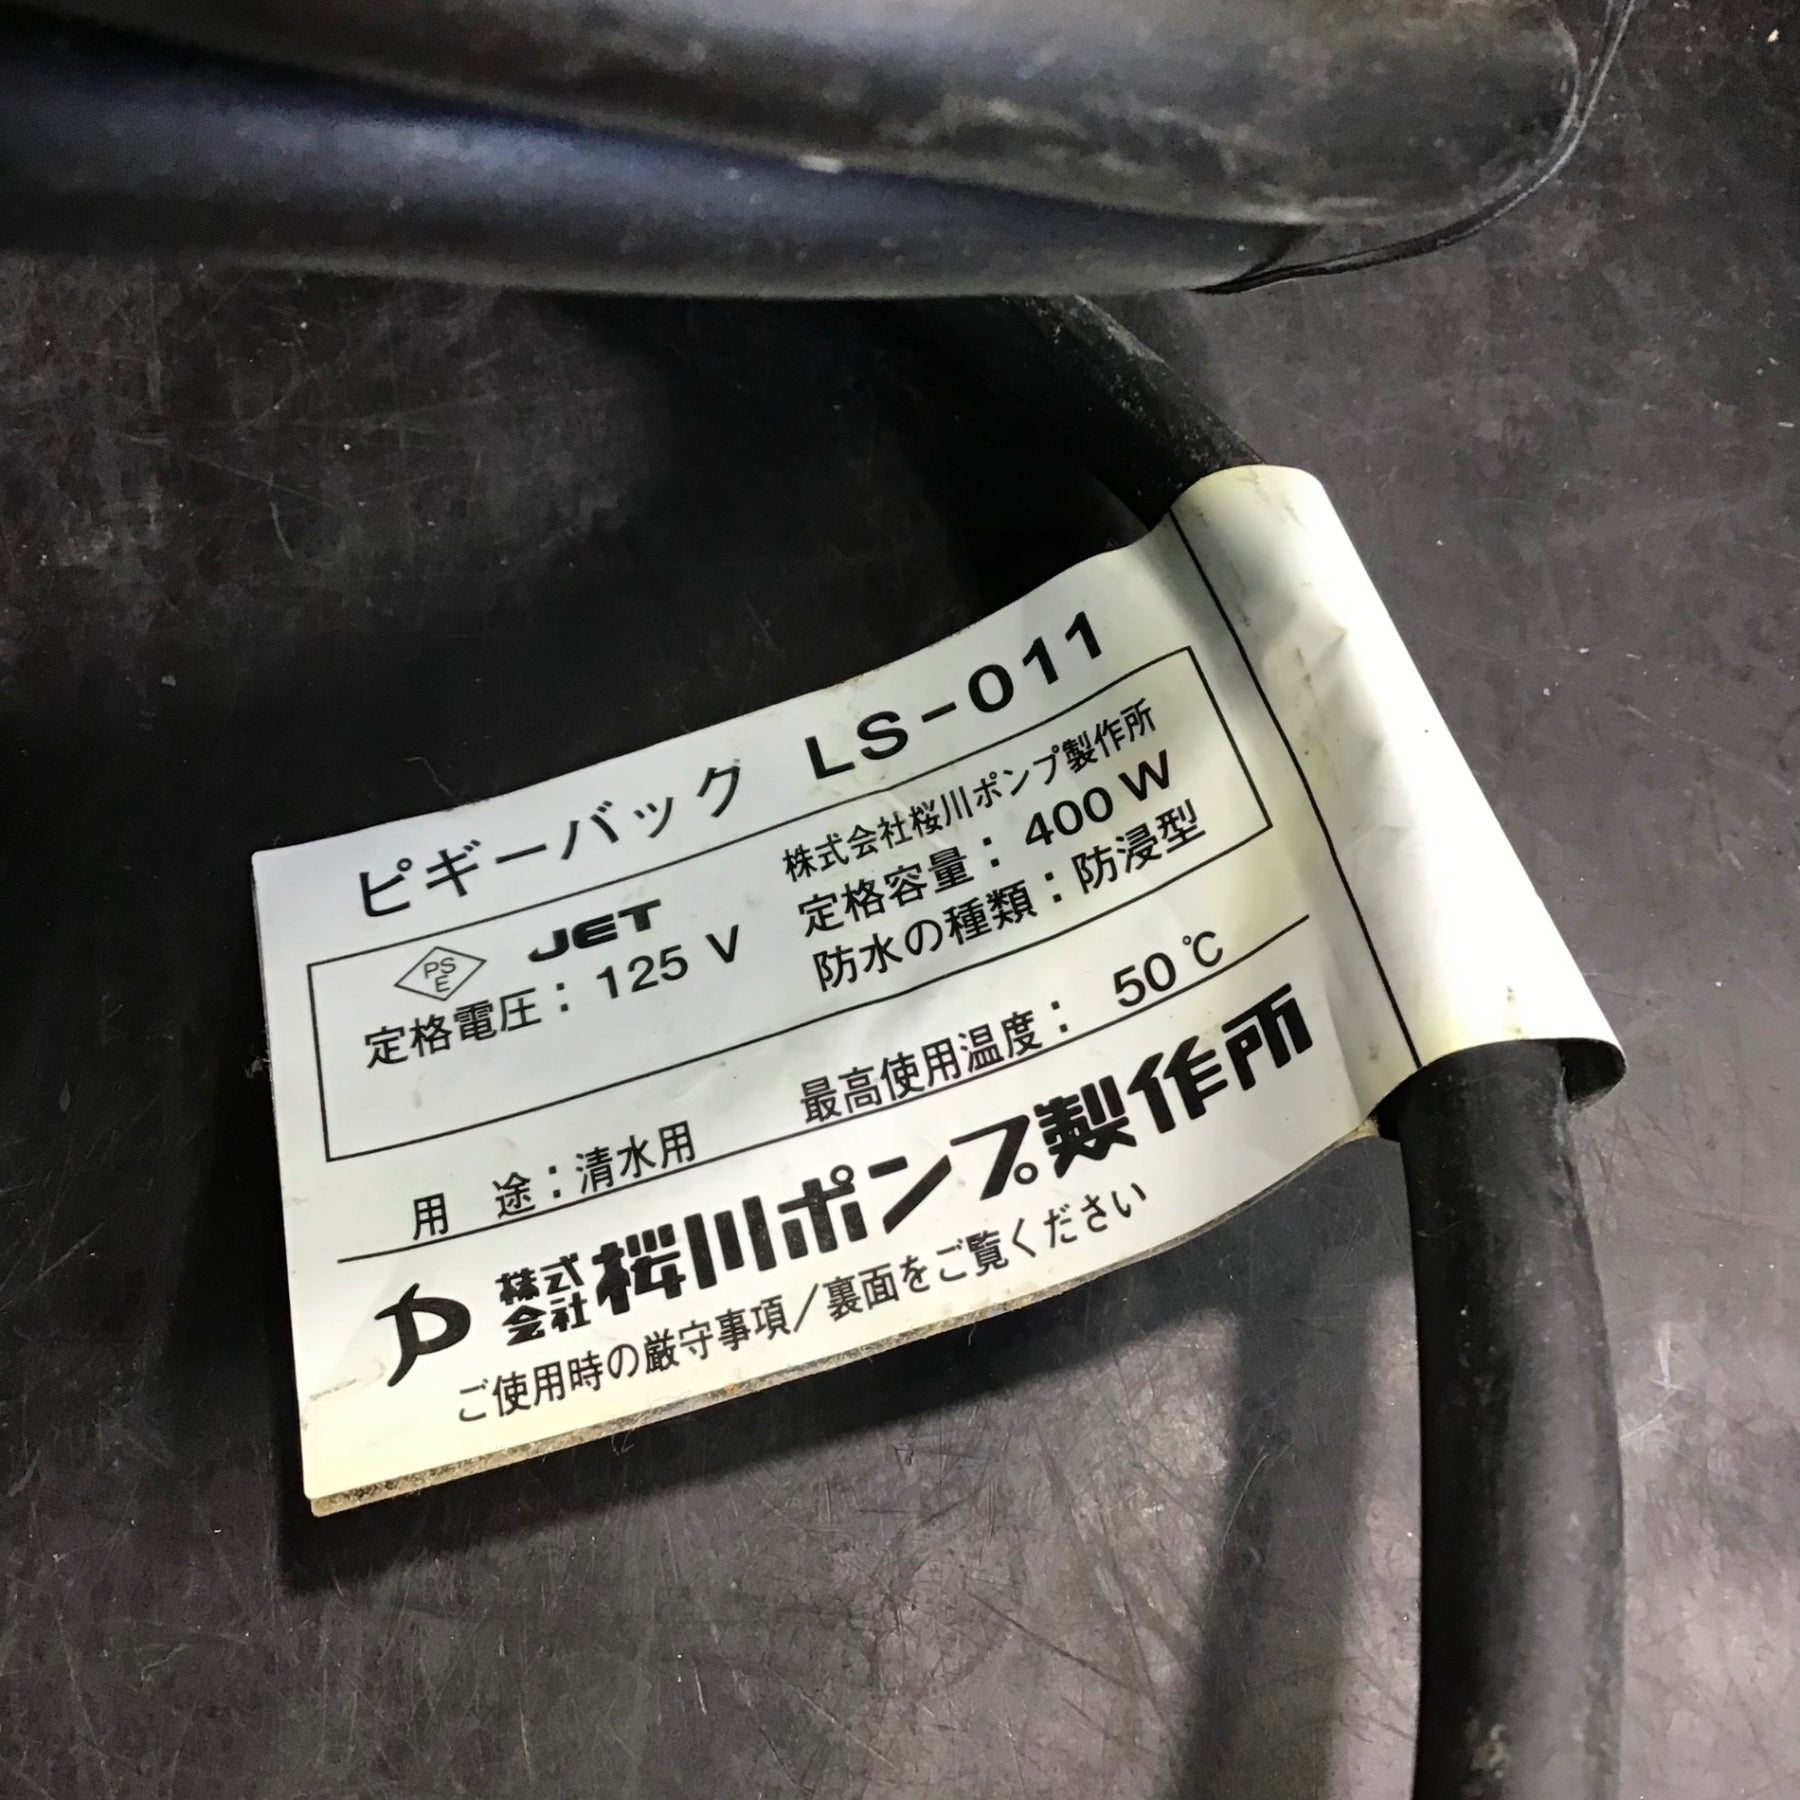 ▽桜川ポンプ 自動水位制御用フロートスイッチ「ピギーバック」LS-011